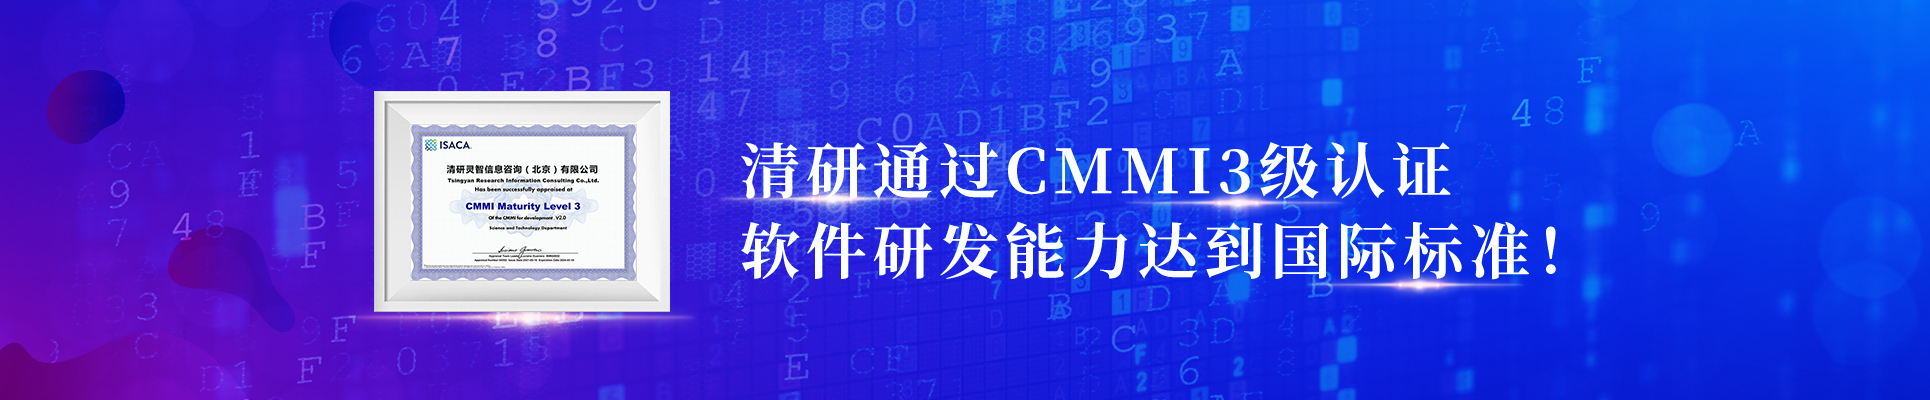 清研通過CMMI3級認證，軟件研發能力達到國際標準